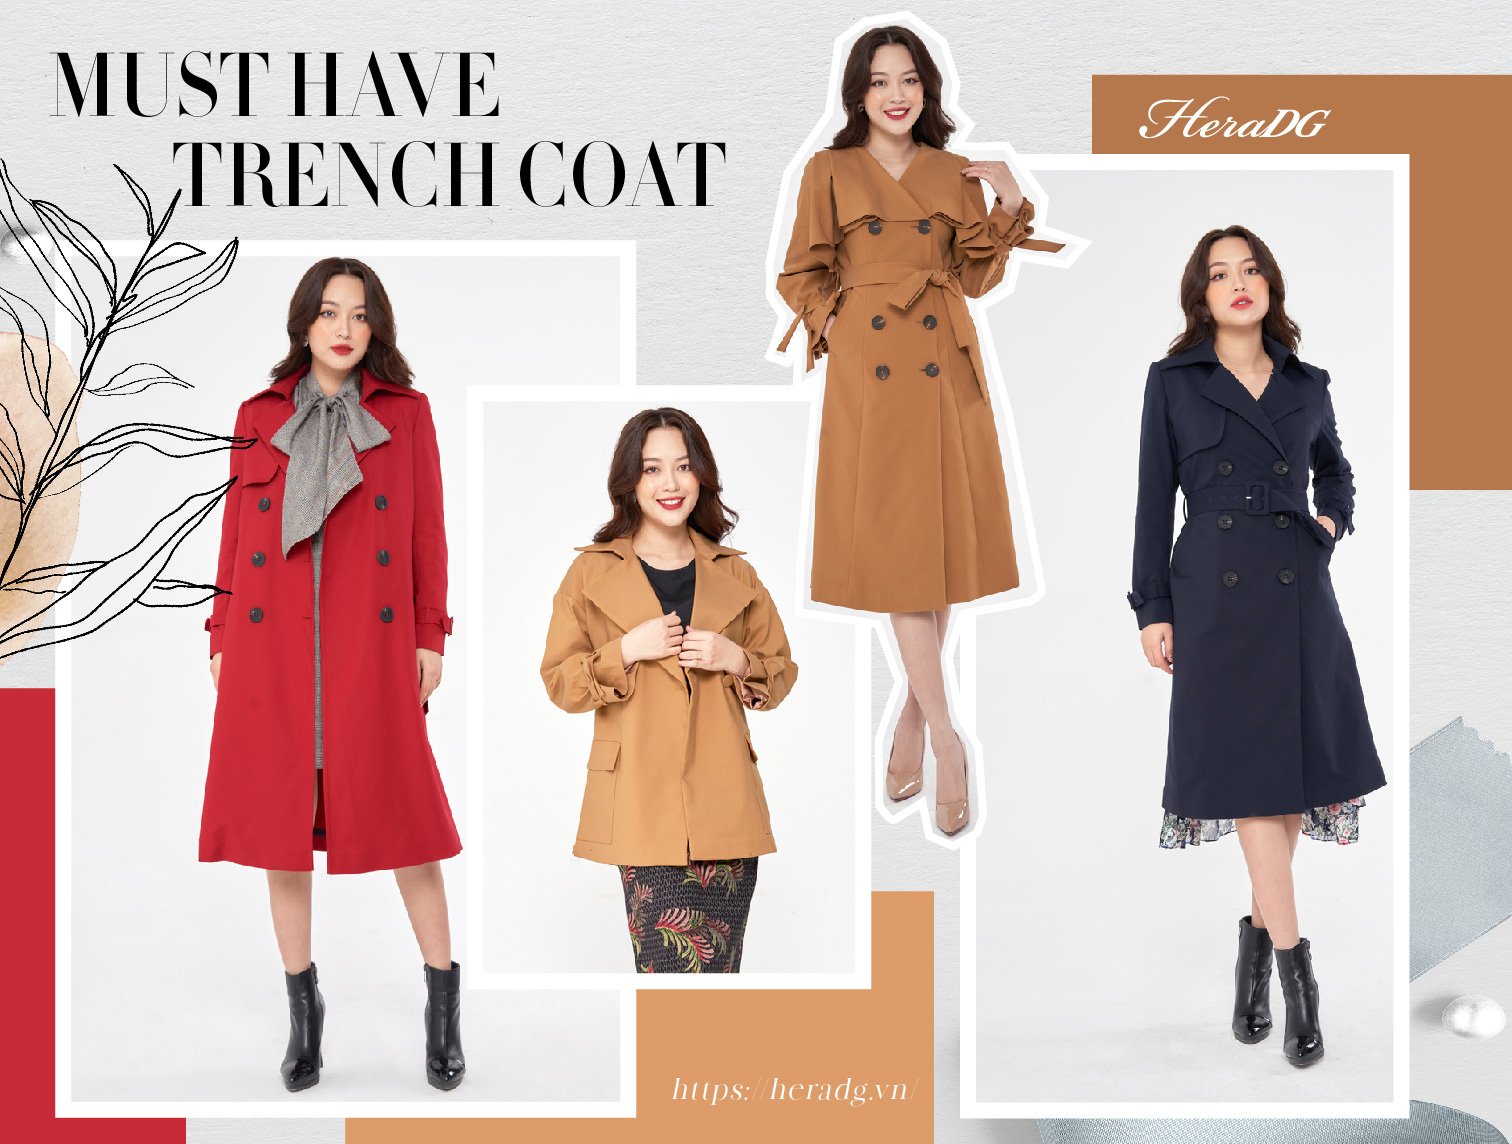 Trench Coat - chiếc áo khoác không thể thiếu trong mùa lạnh